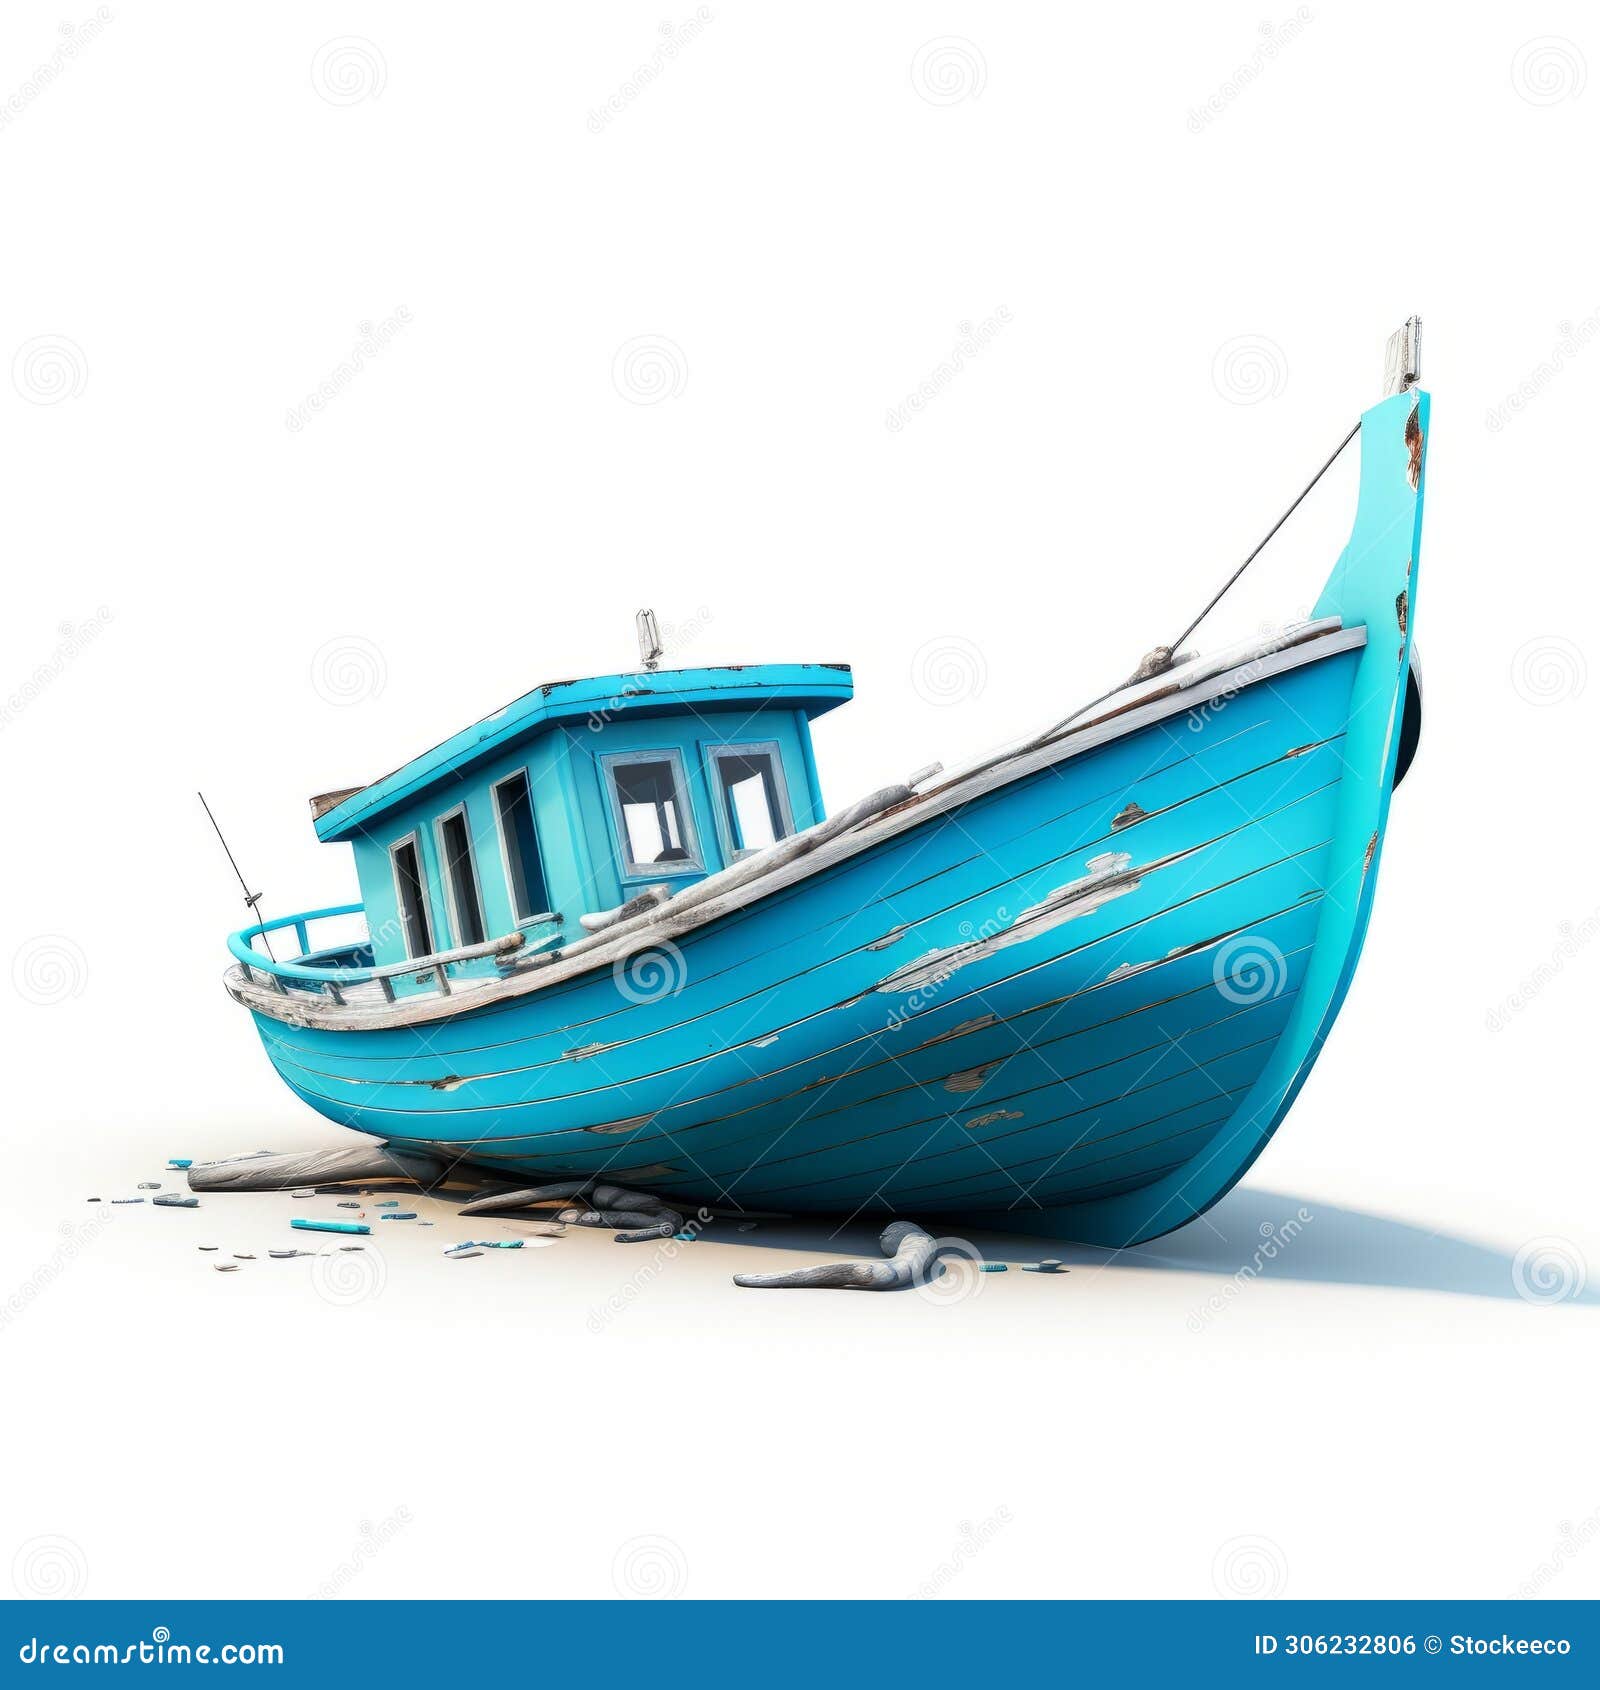 realistic blue boat on white background - nostalgic zbrush art